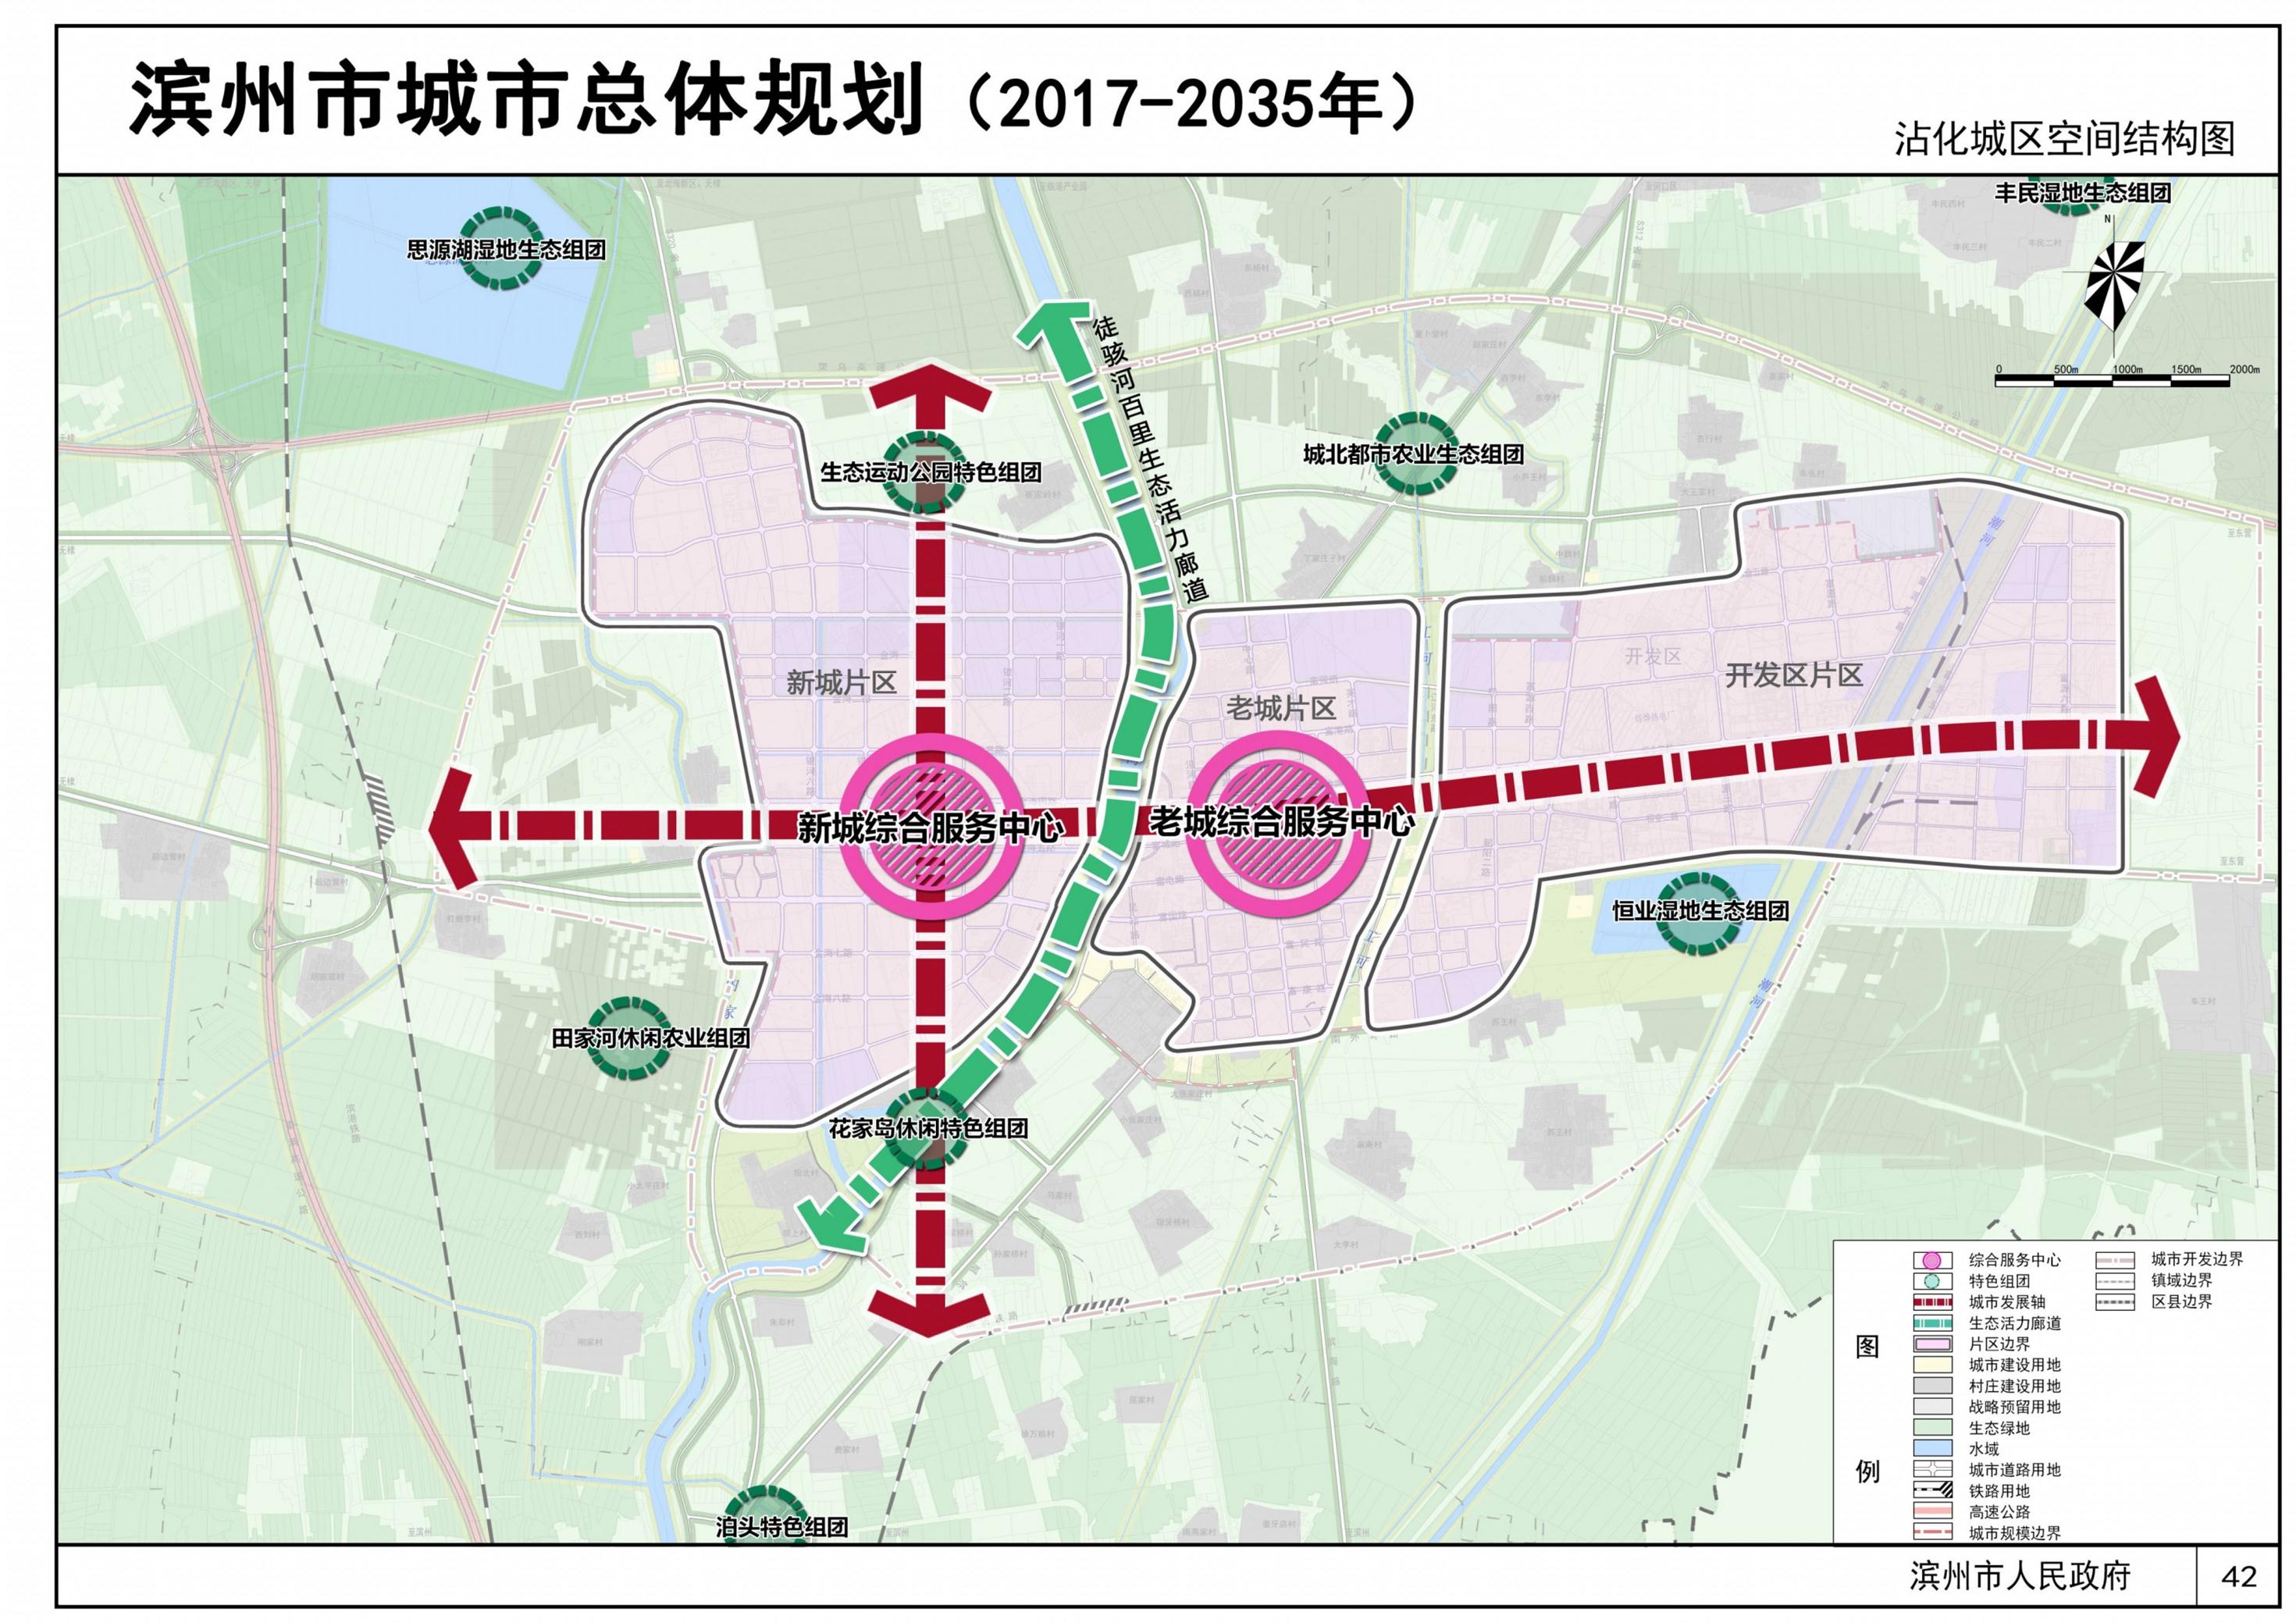 《滨州市城市总体规划(2017-2035年)》 (草案)公示和征集